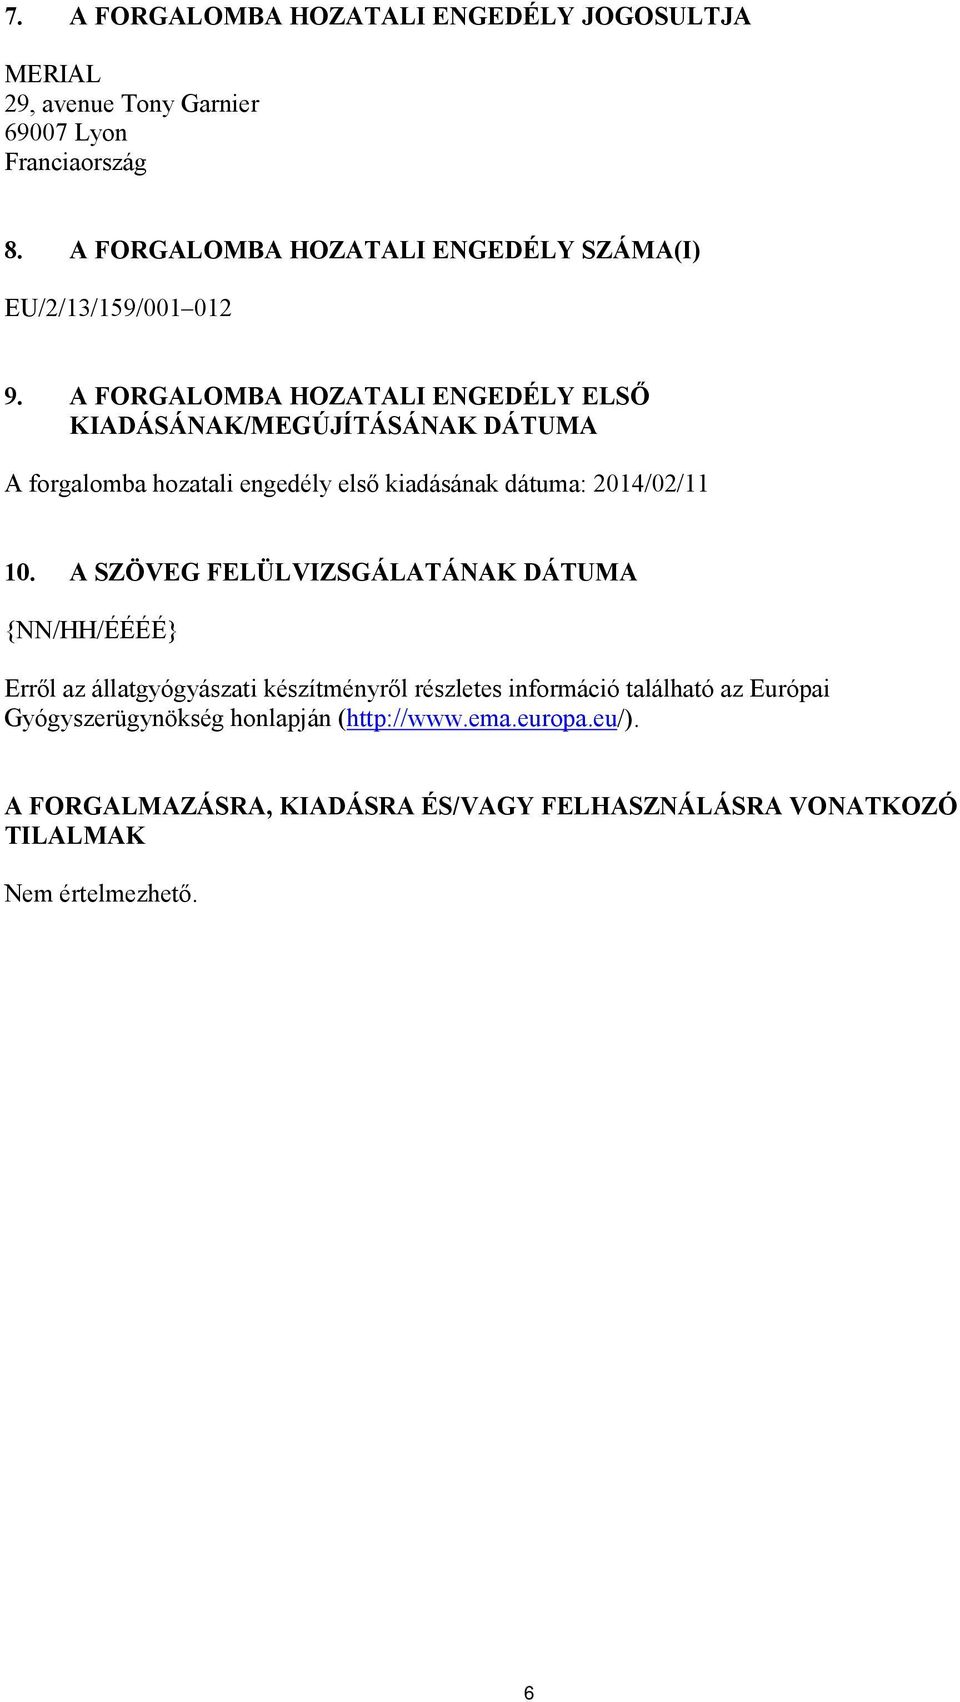 A FORGALOMBA HOZATALI ENGEDÉLY ELSŐ KIADÁSÁNAK/MEGÚJÍTÁSÁNAK DÁTUMA A forgalomba hozatali engedély első kiadásának dátuma: 2014/02/11 10.